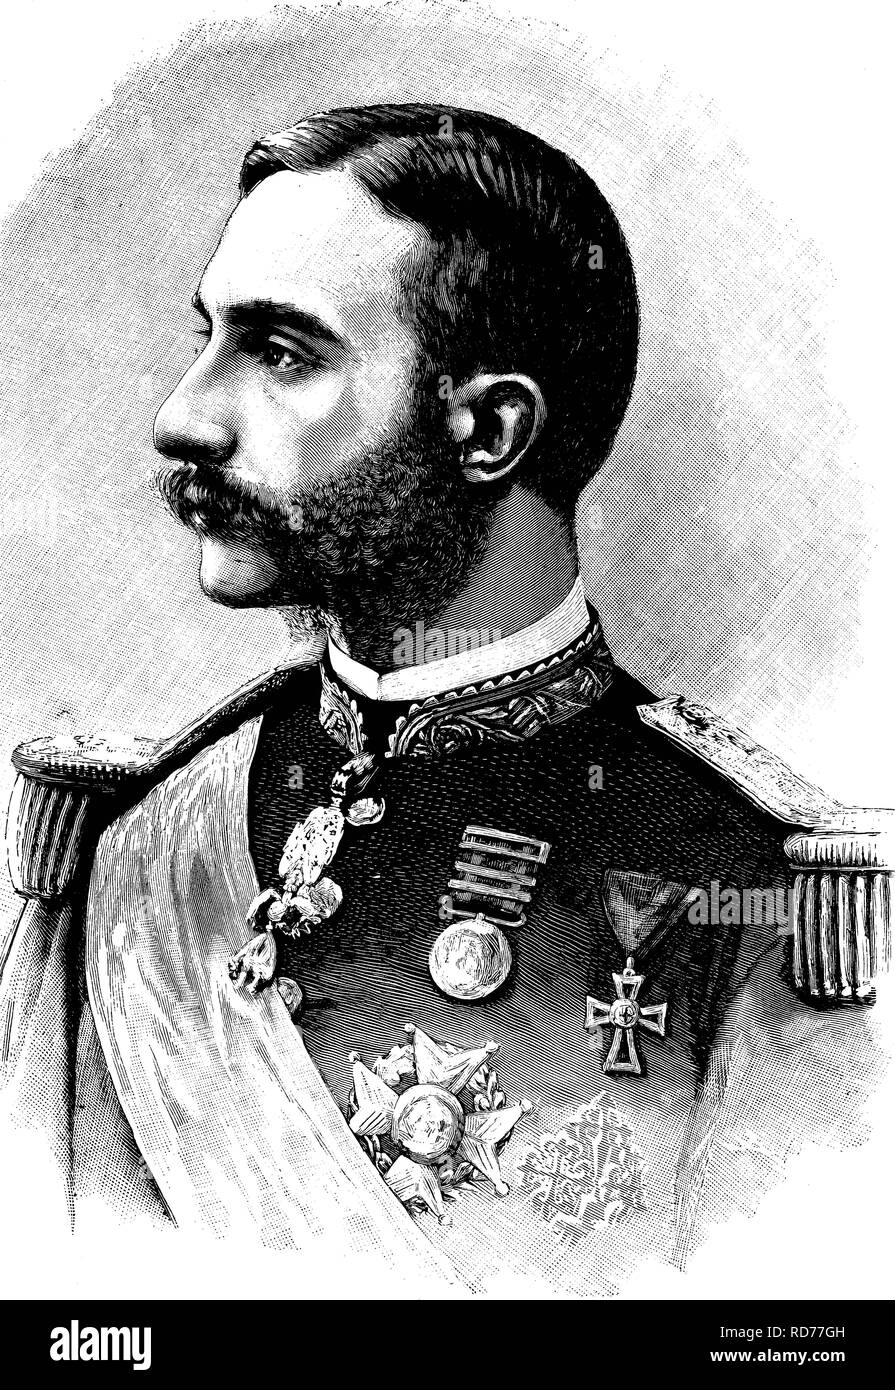 Alfonso XII (1857-1885), roi d'Espagne, illustration historique, vers 1886 Banque D'Images